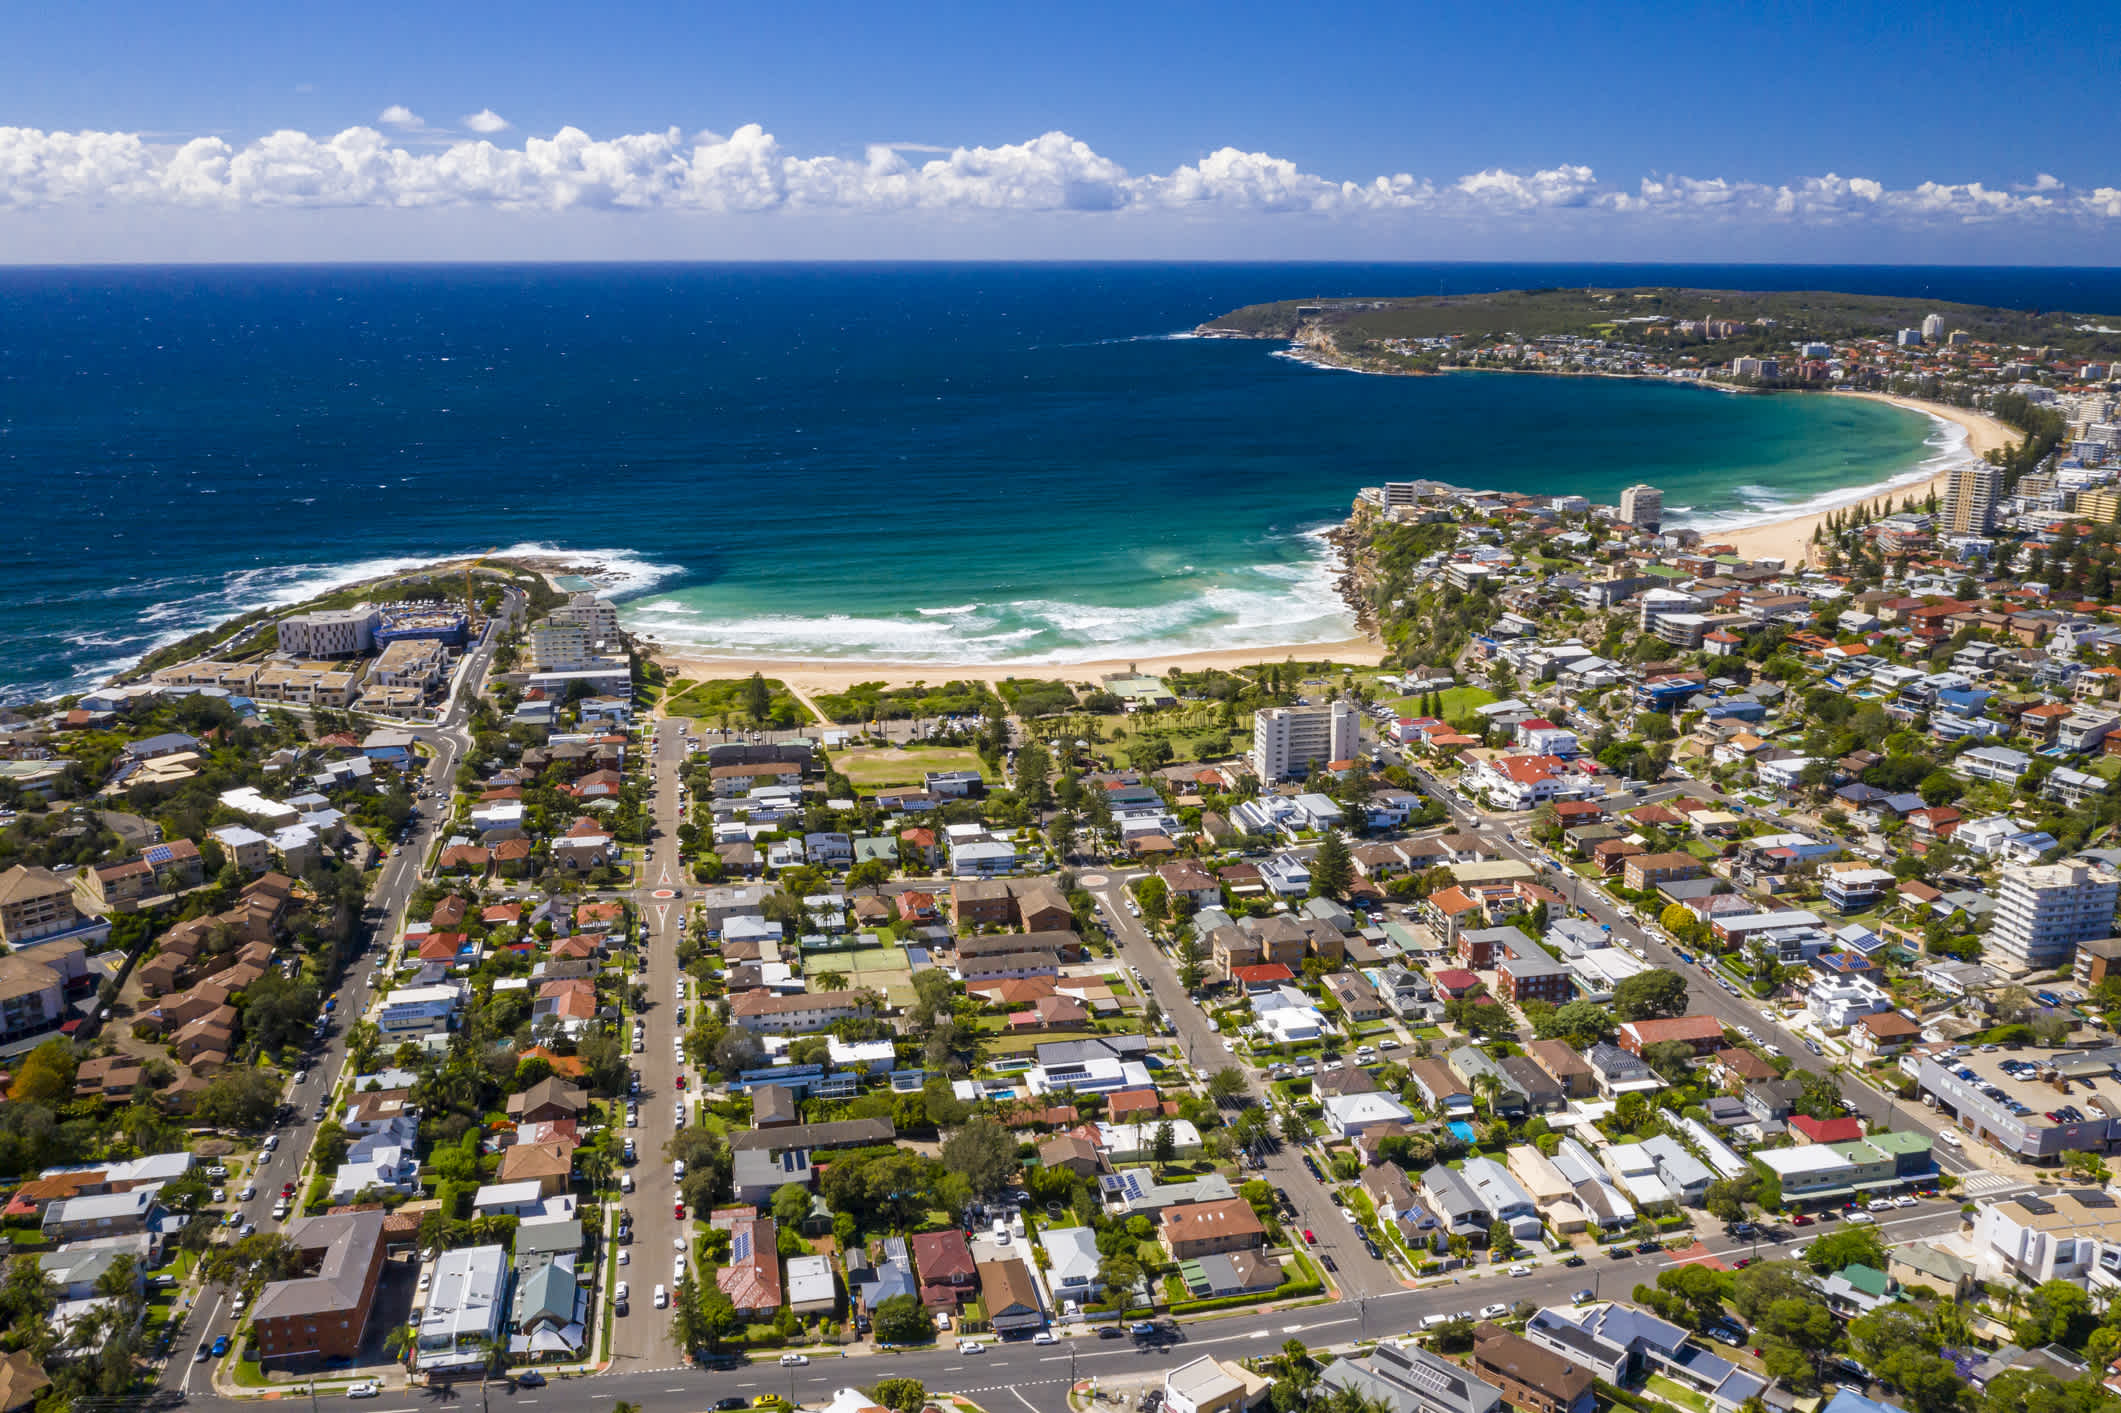 Vue aérienne de Manly Beach au nord de Sydney, Australie.